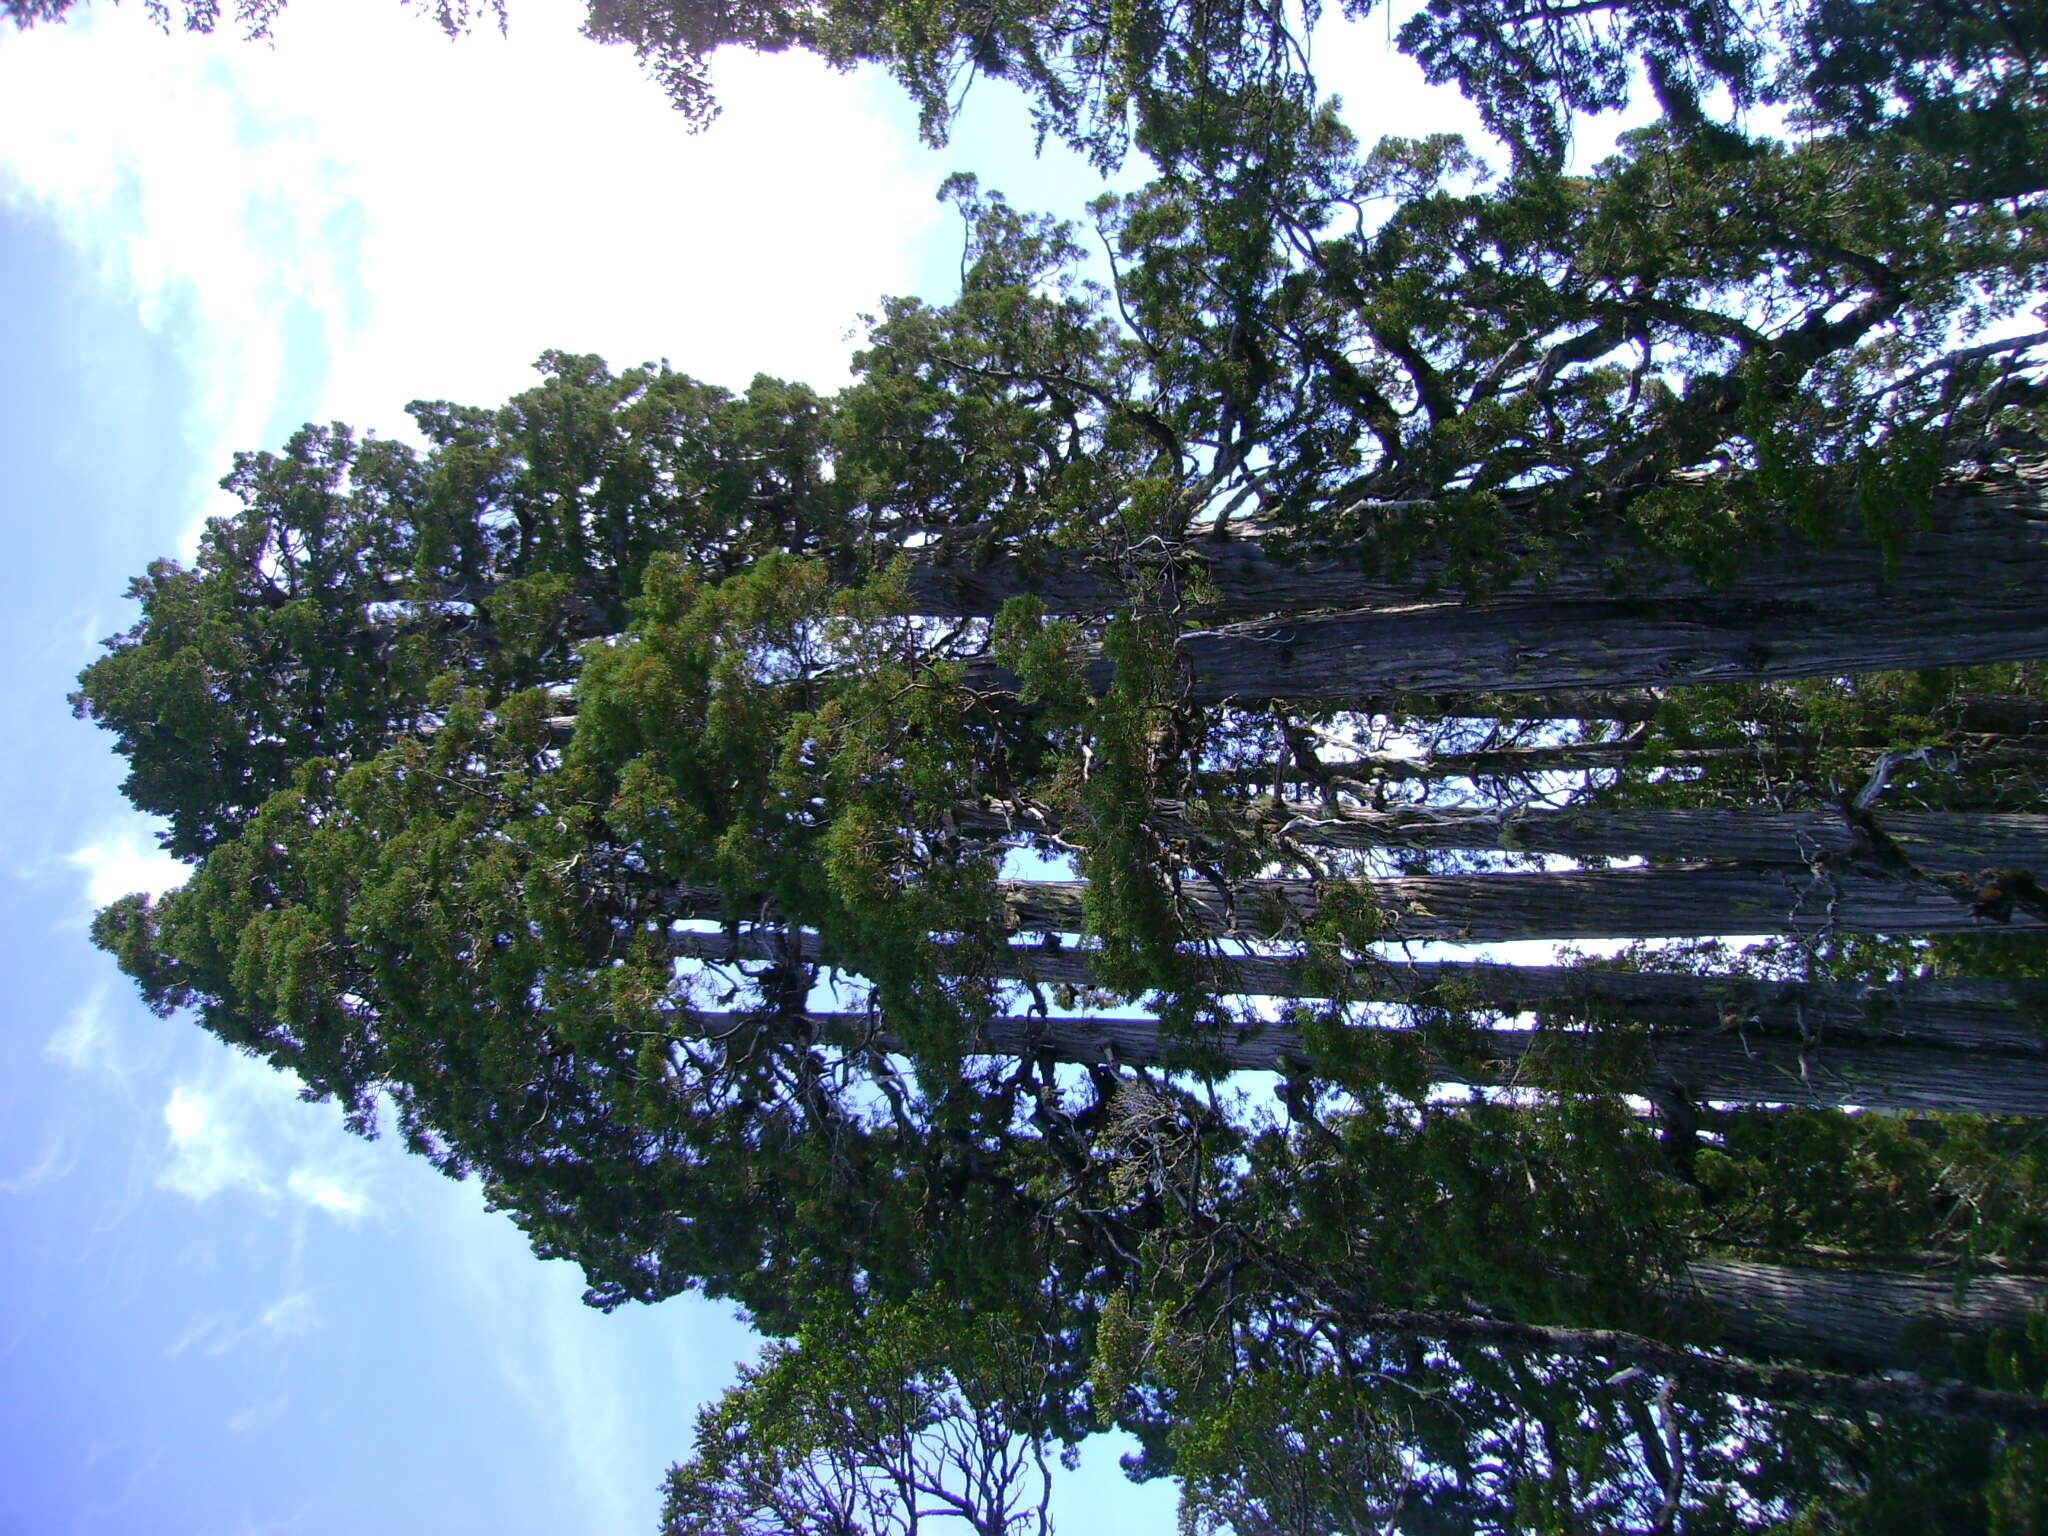 Sivun Patagoniansypressit kuva